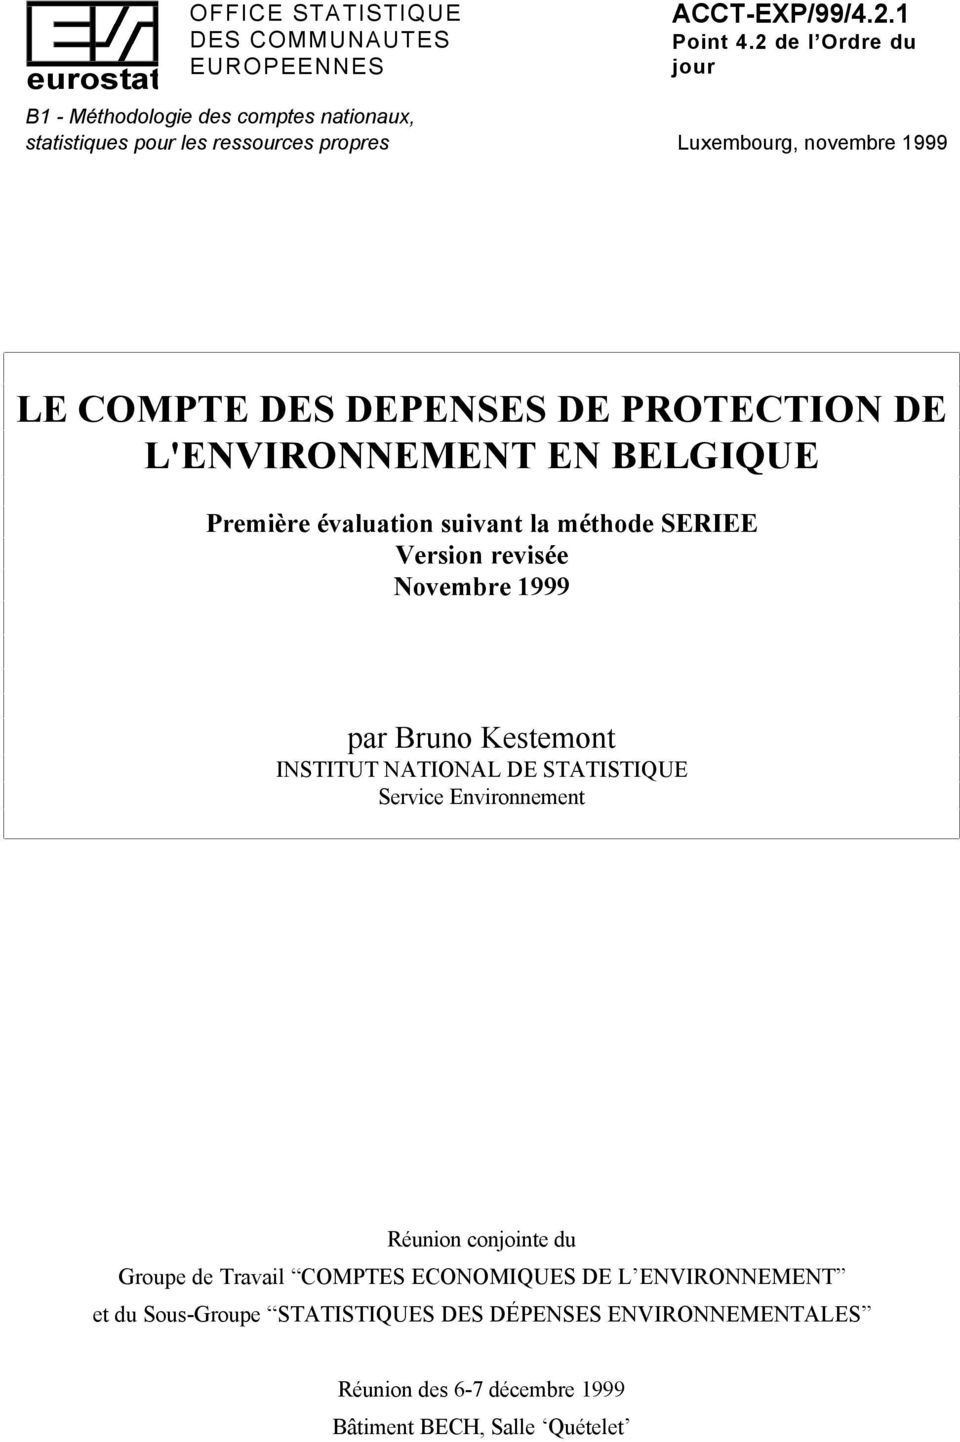 PROTECTION DE L'ENVIRONNEMENT EN BELGIQUE Première évaluation suivant la méthode SERIEE Version revisée Novembre 1999 par Bruno Kestemont INSTITUT NATIONAL